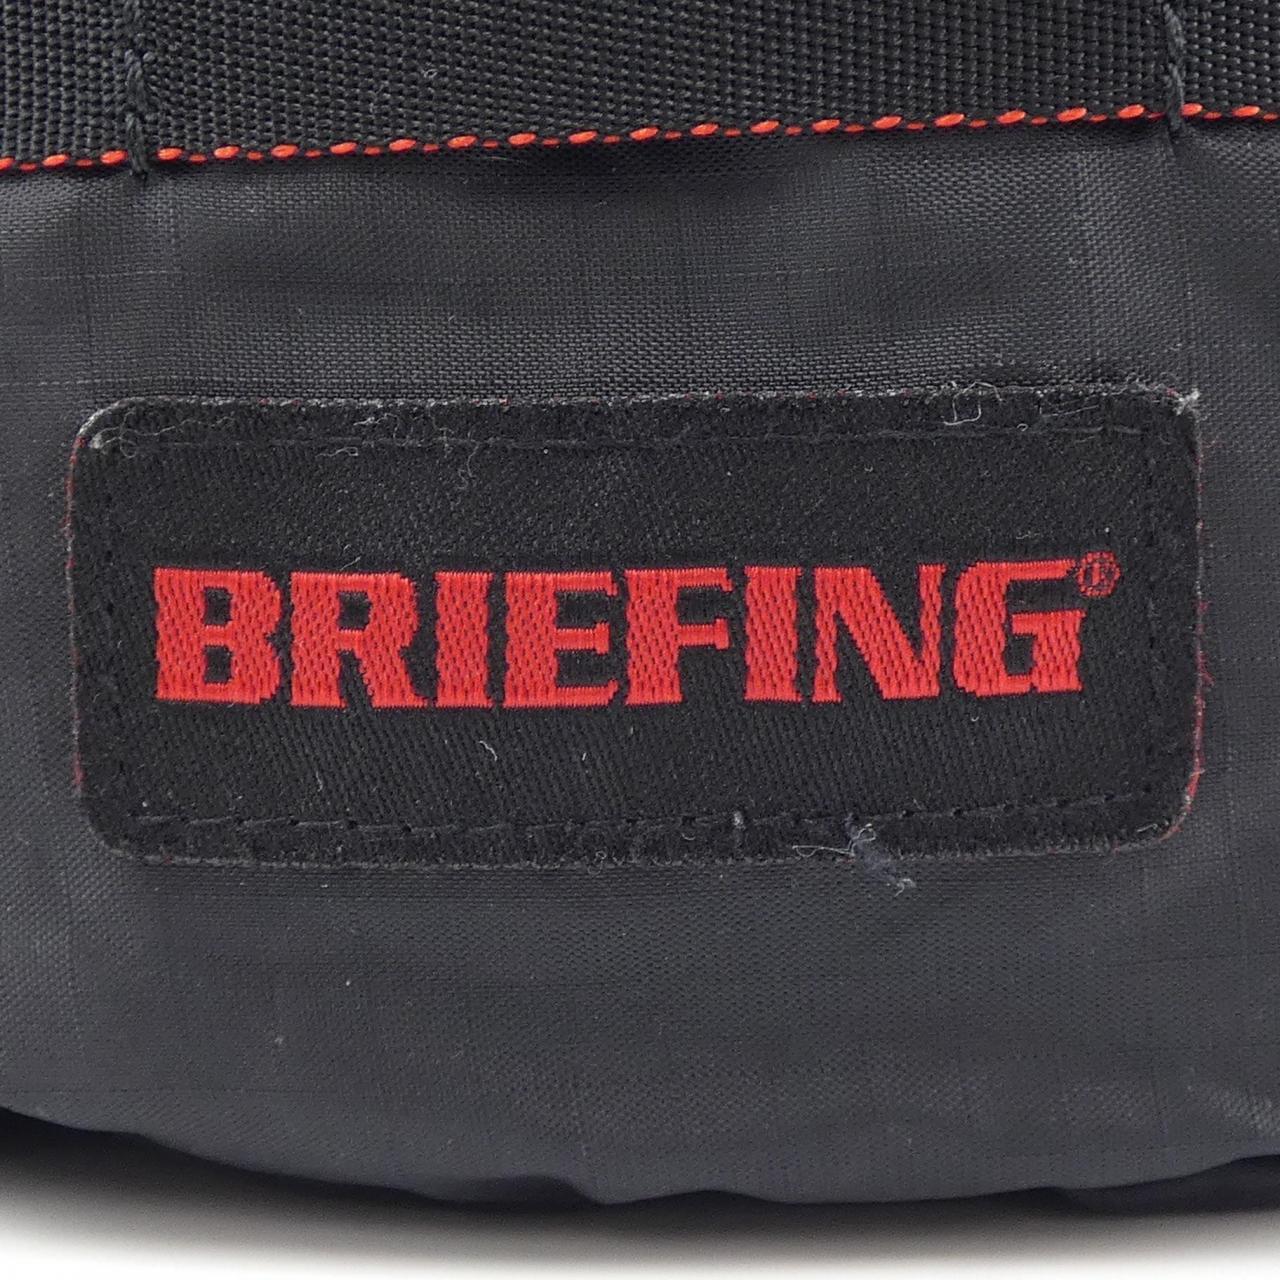 ブリーフィング BRIEFING BAG